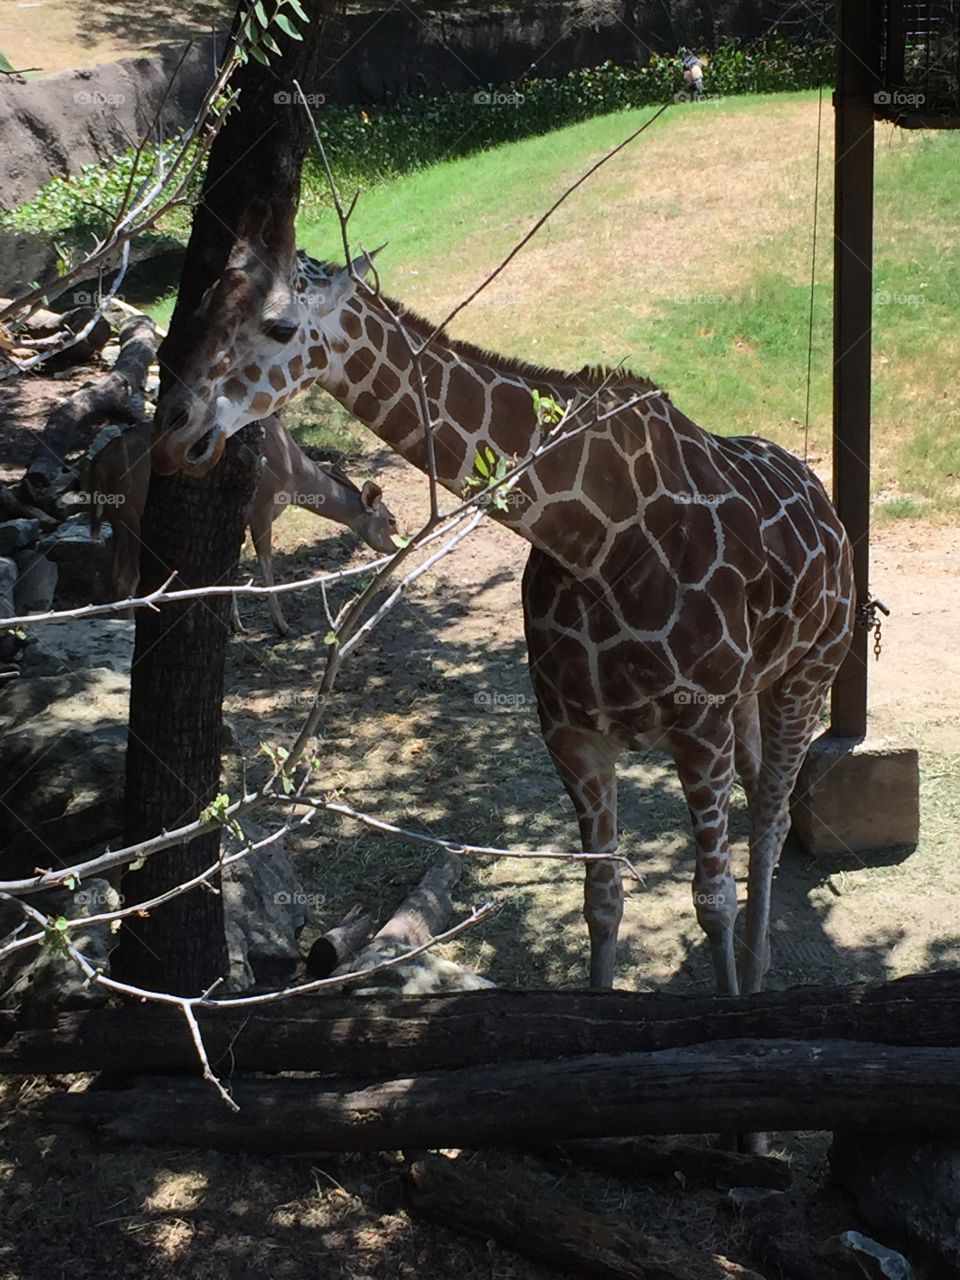 Who you looking at? Giraffe at zoo 